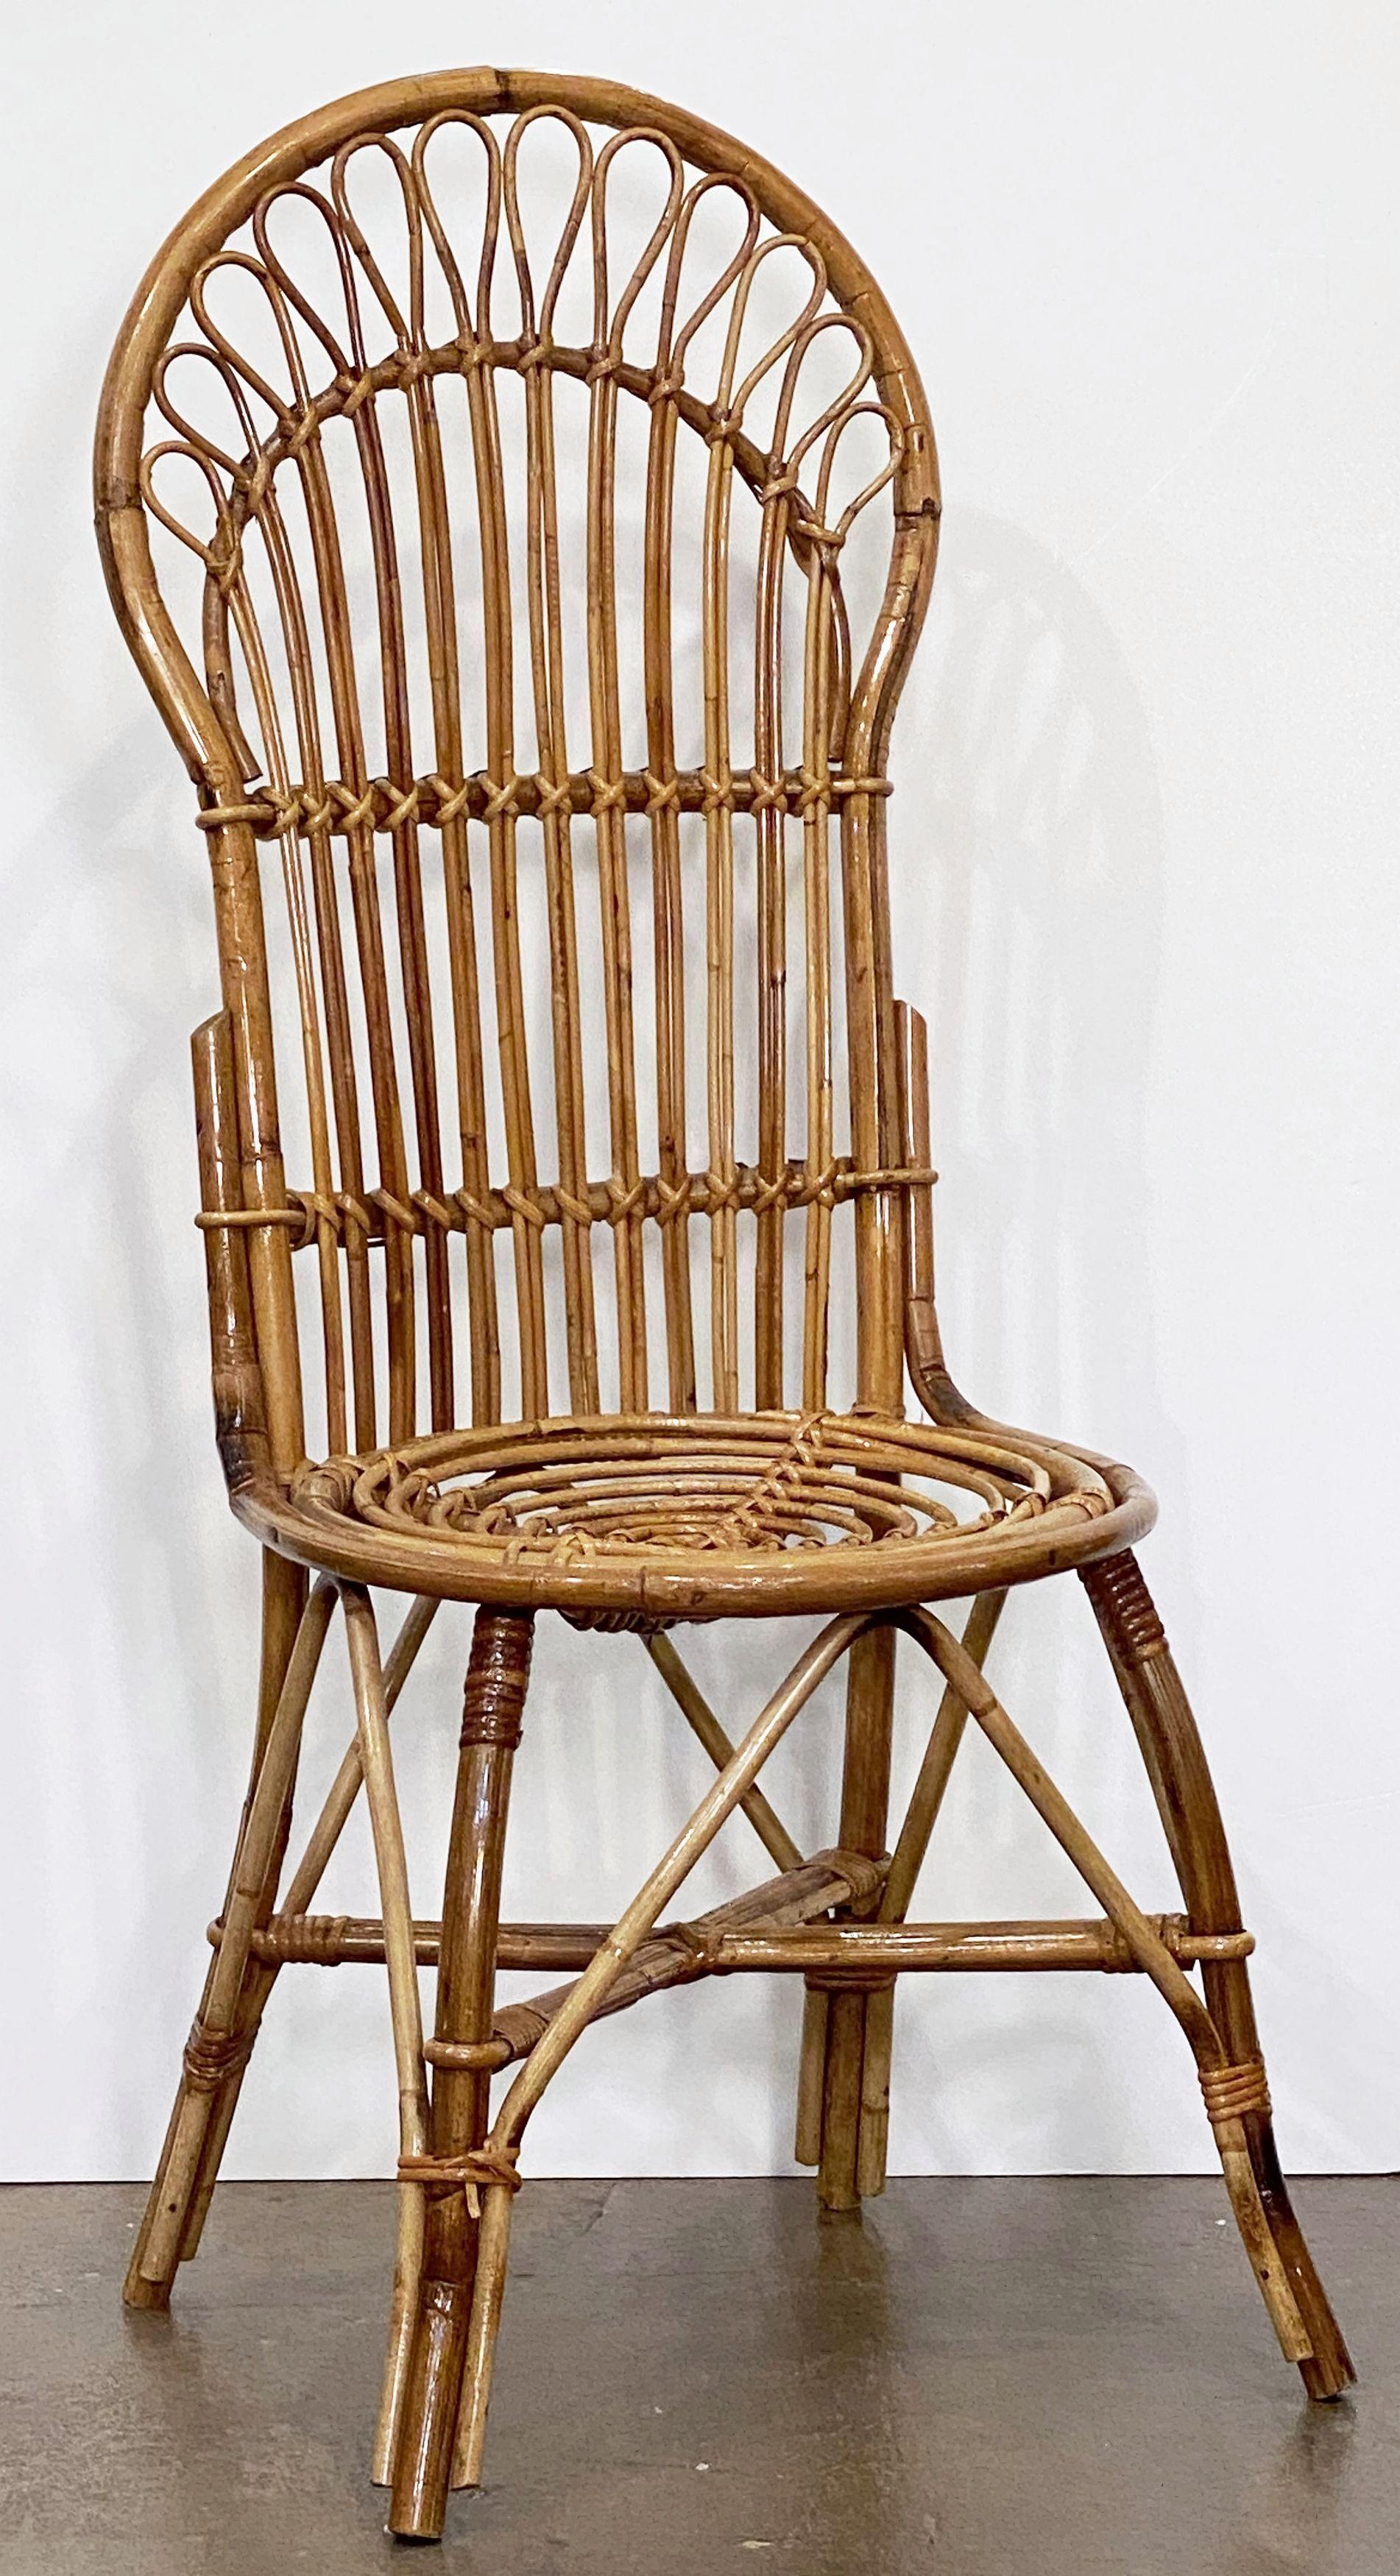 Une belle chaise italienne vintage à dossier en éventail du milieu du 20e siècle en rotin tressé et en bambou présentant un design élégant au niveau du dossier, de l'assise et des pieds.

Deux disponibles - Se renseigner